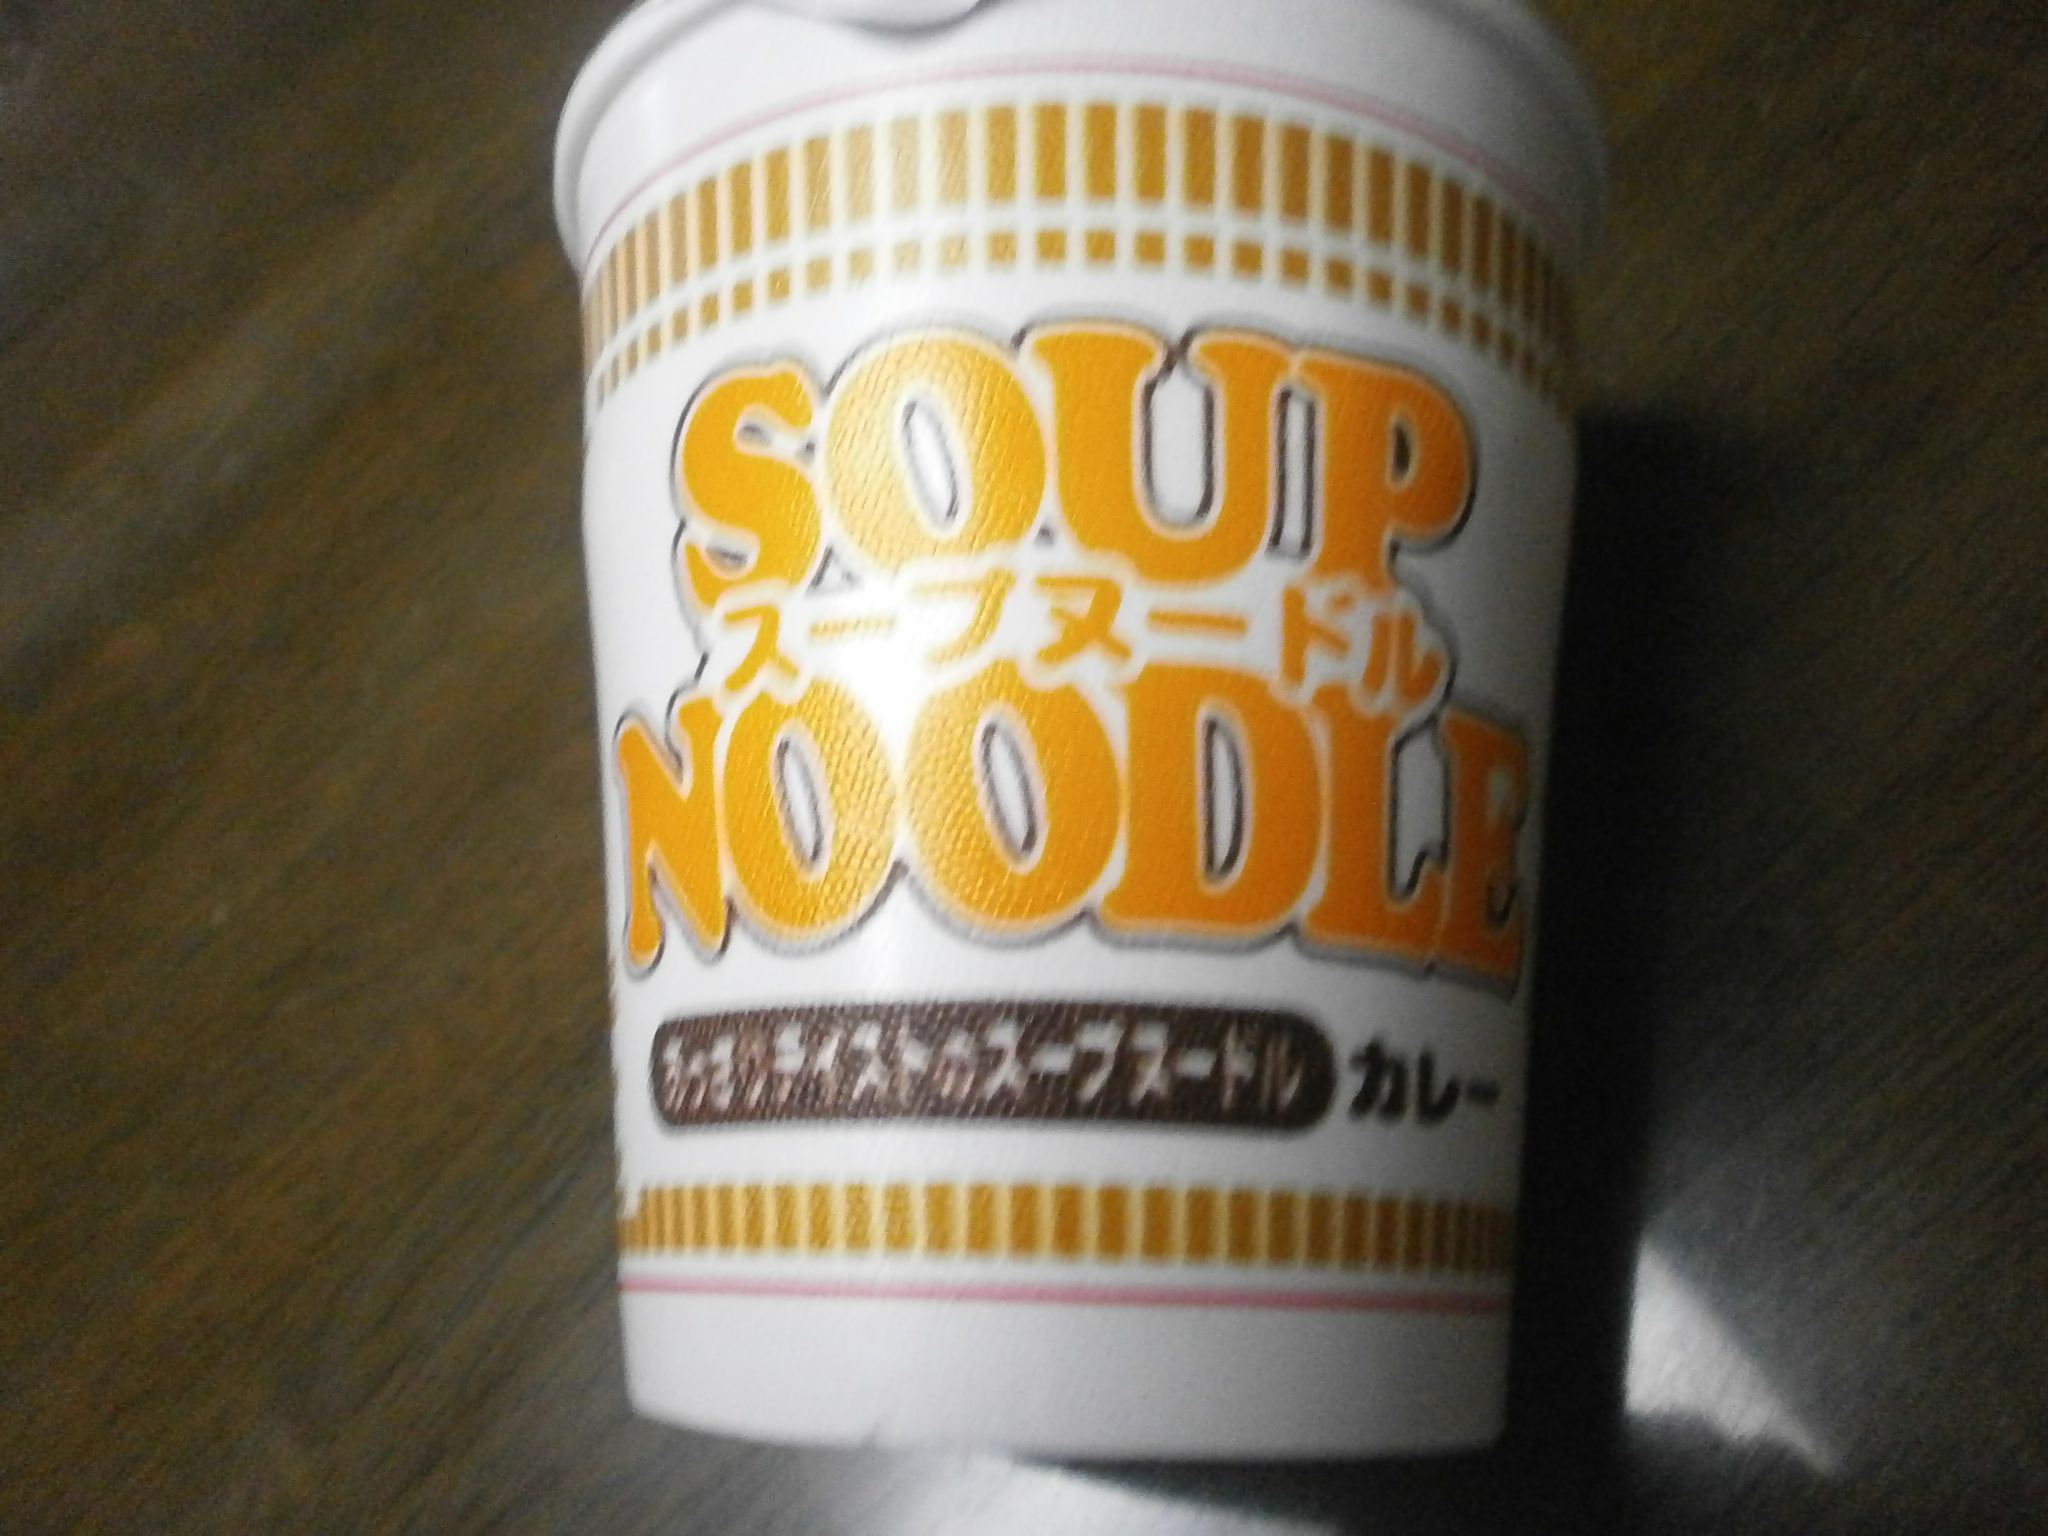 Que altas calorias? Noodle Soup (Curry)? Sopa de macarrão (marisco)?